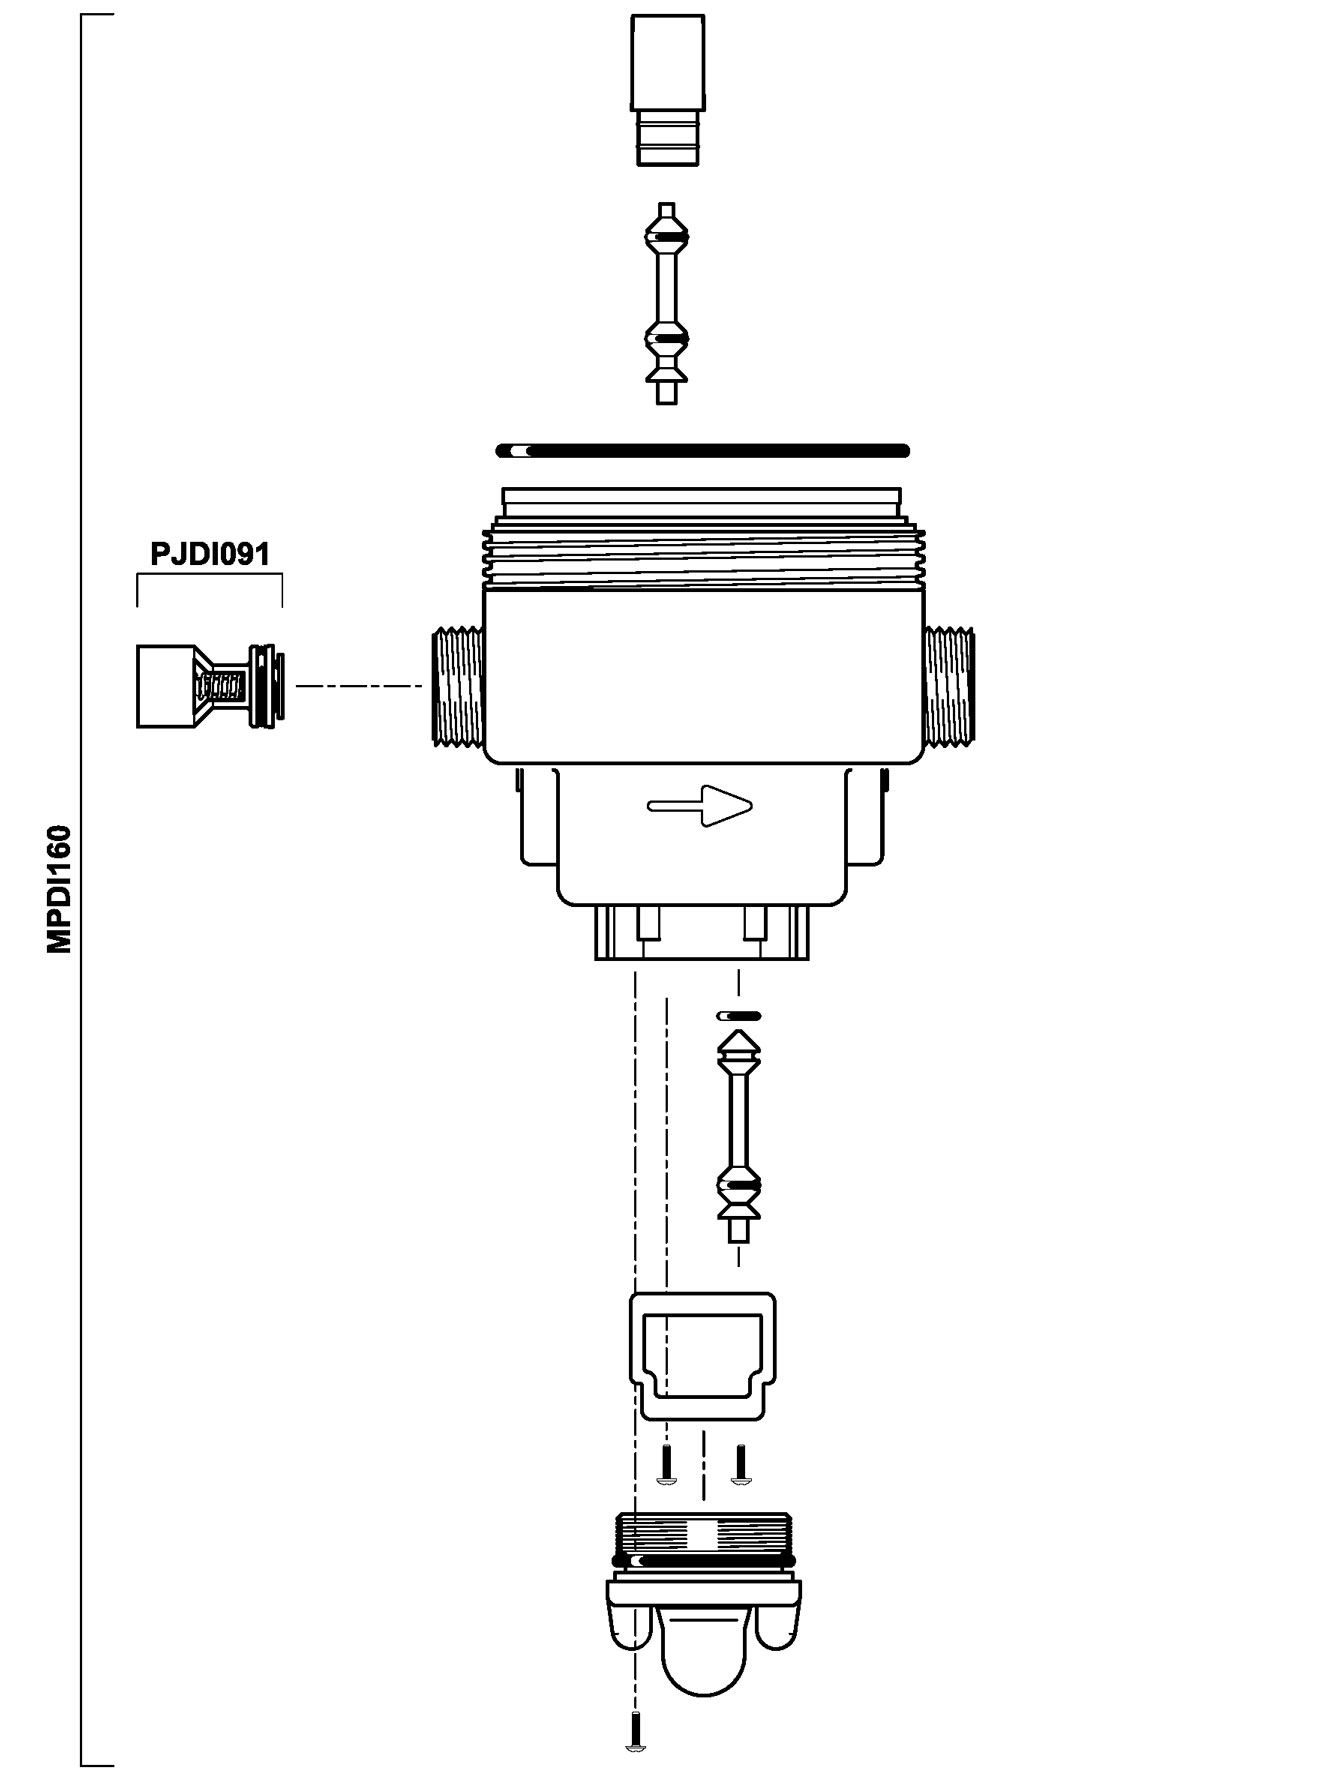 MPDI160VF - Deckel mit Entlüftung + Gehäuse + Bypass-Schalter D07 Serie